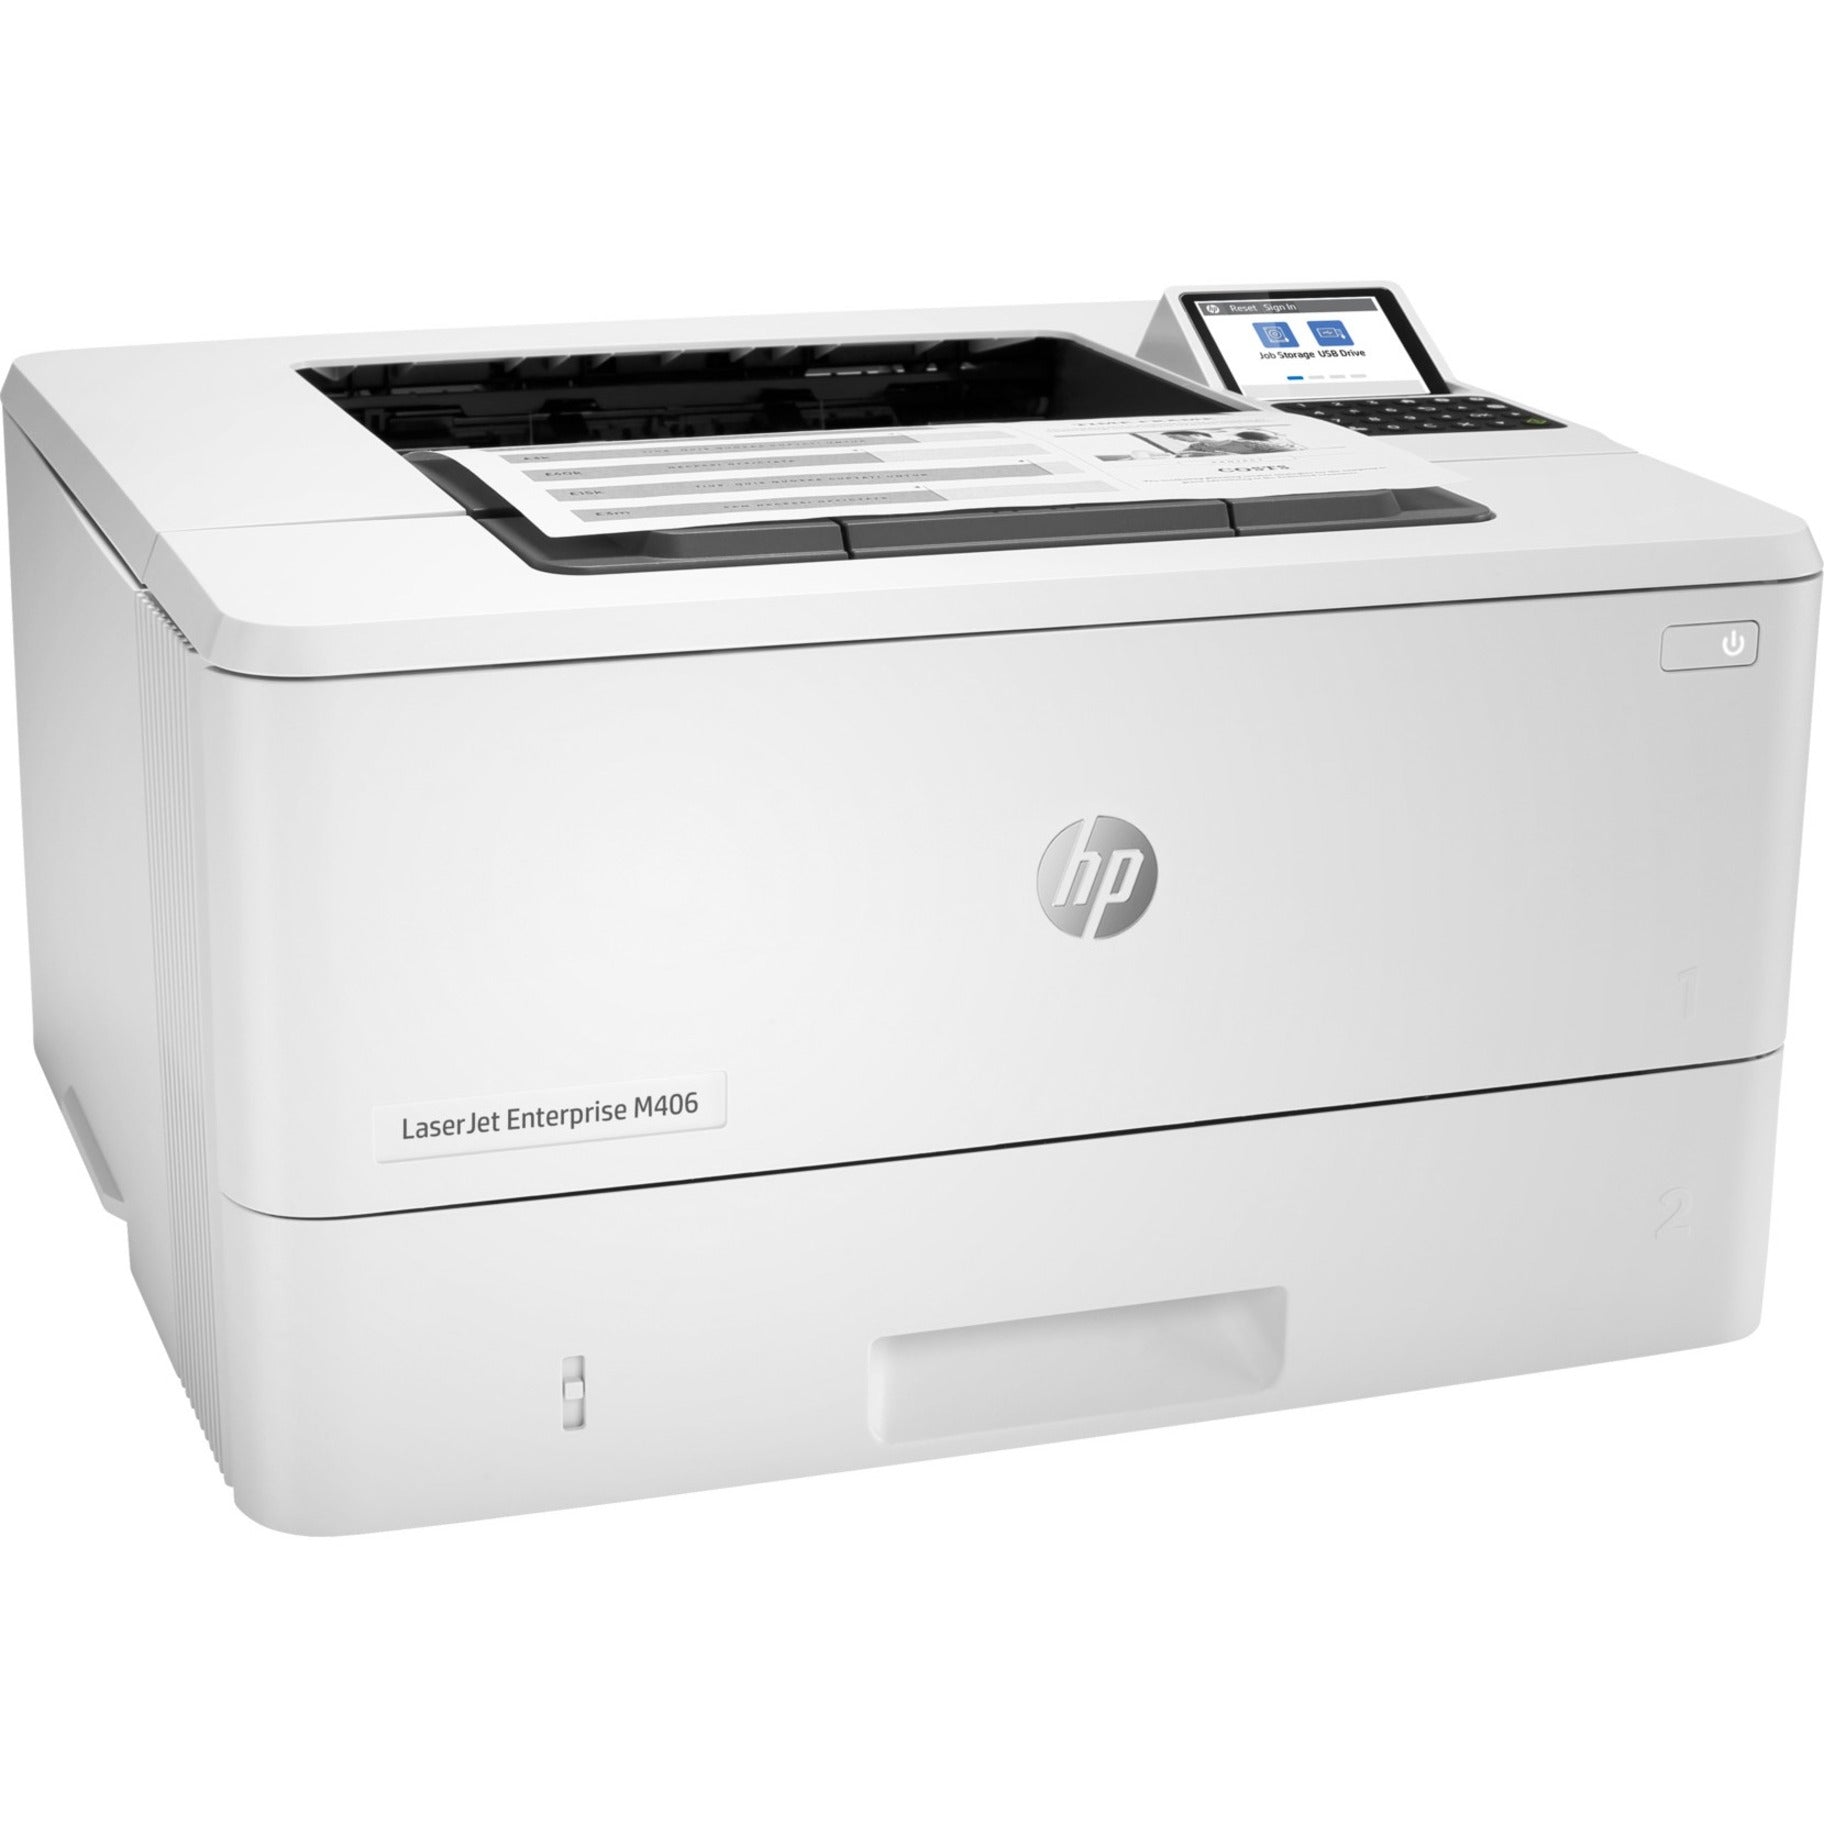 HP LaserJet Enterprise M406 M406dn Desktop Laser Printer - Monochrome (3PZ15A#201)